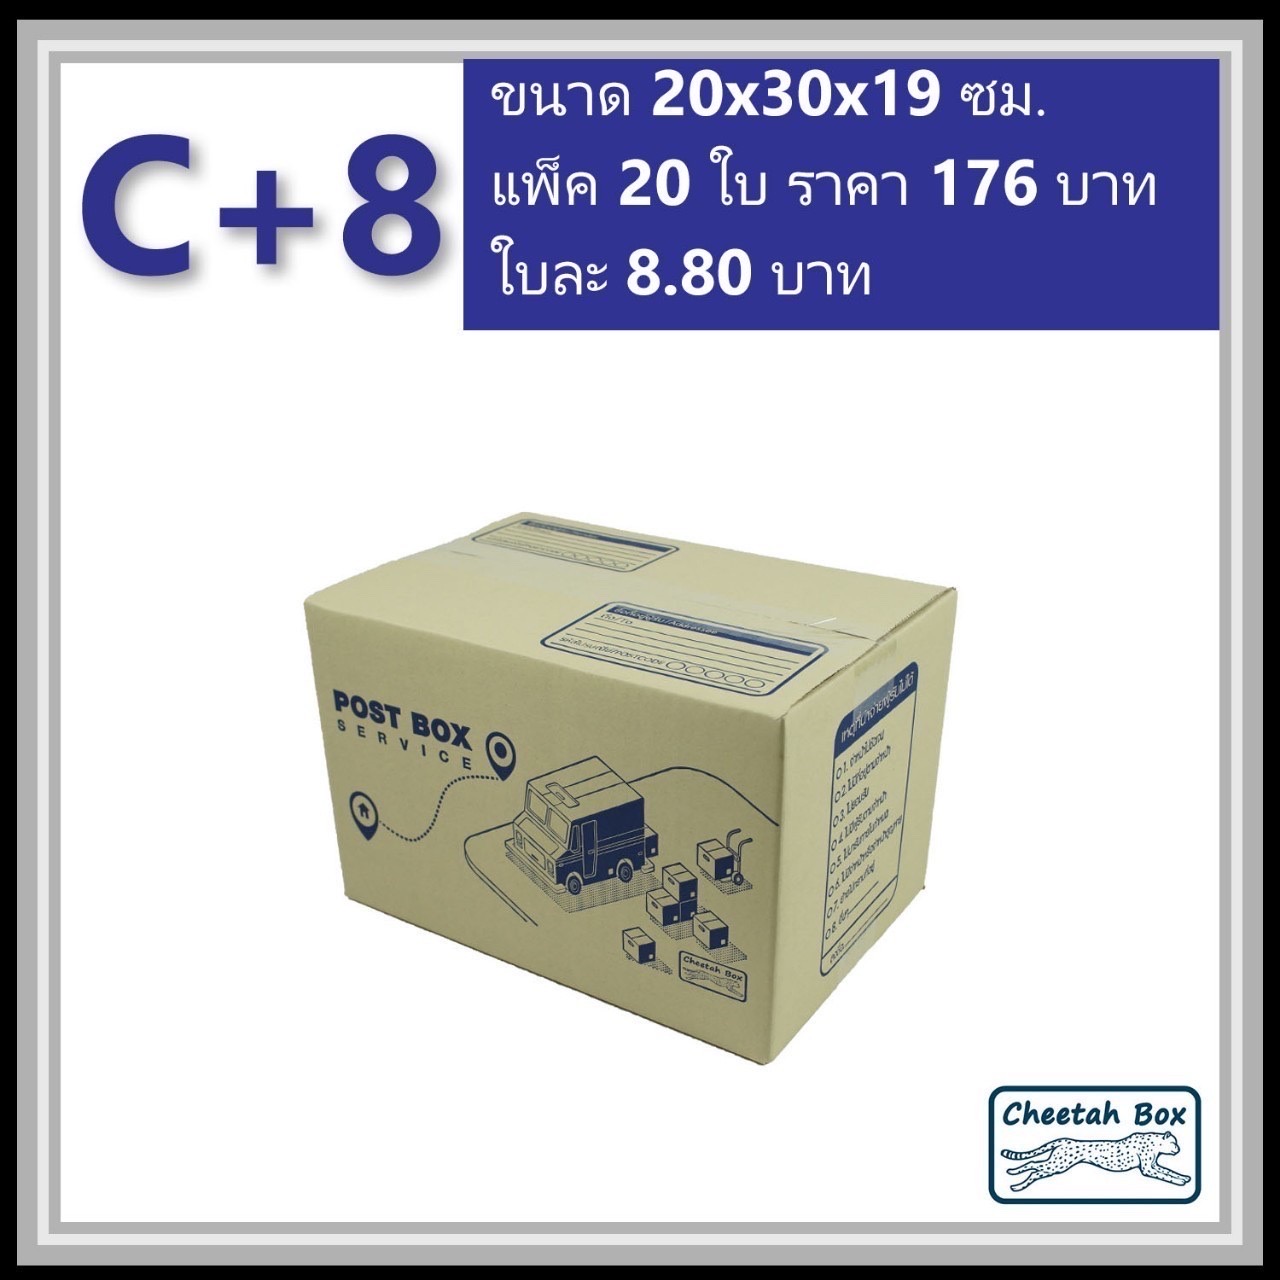 กล่องไปรษณีย์ C+8 (Cheetah Box ขนาด 20*30*19 CM)